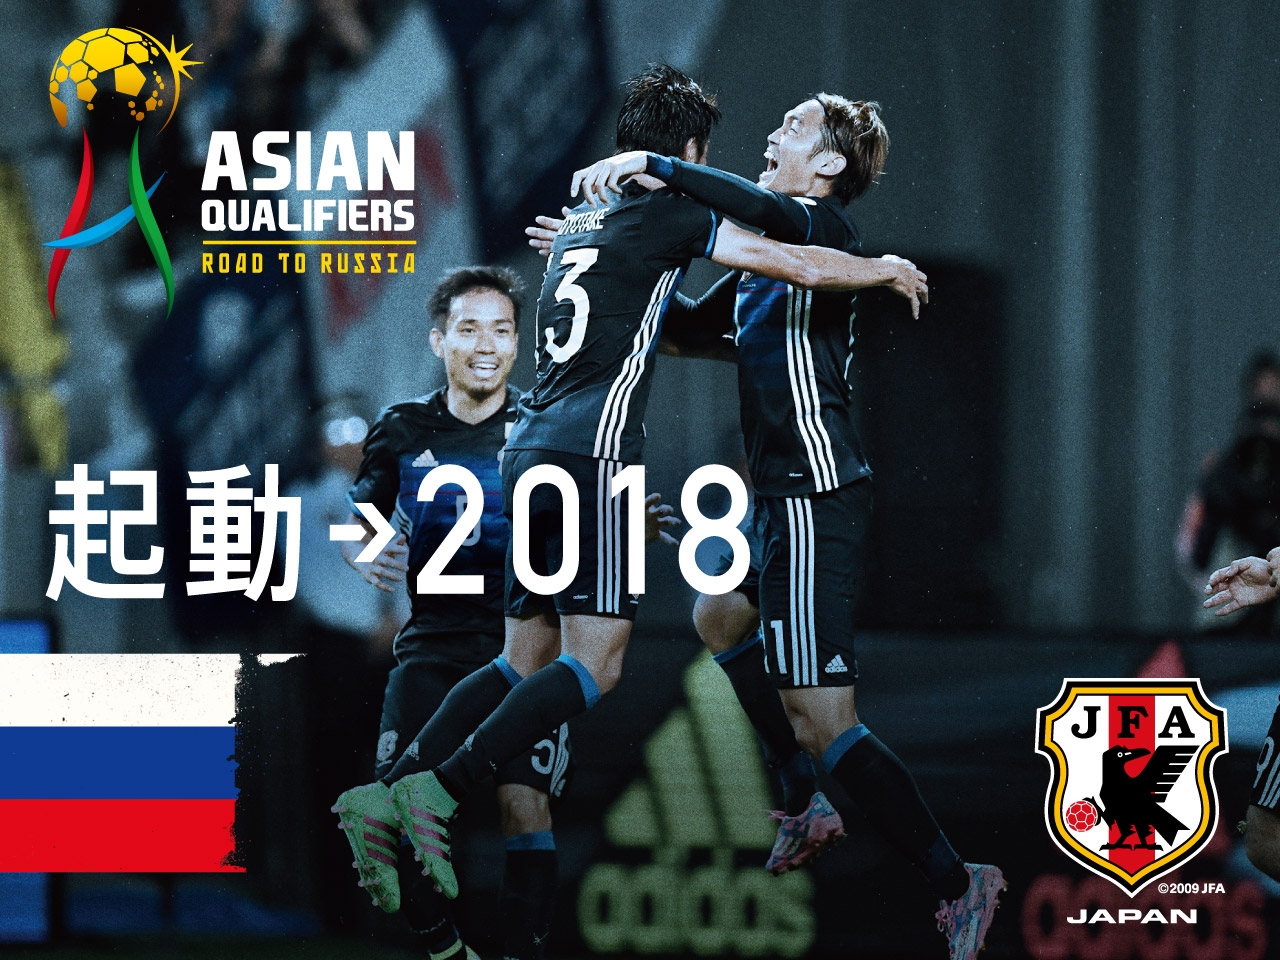 アジア最終予選 Road To Russia 9 1 Top Jfa 公益財団法人日本サッカー協会